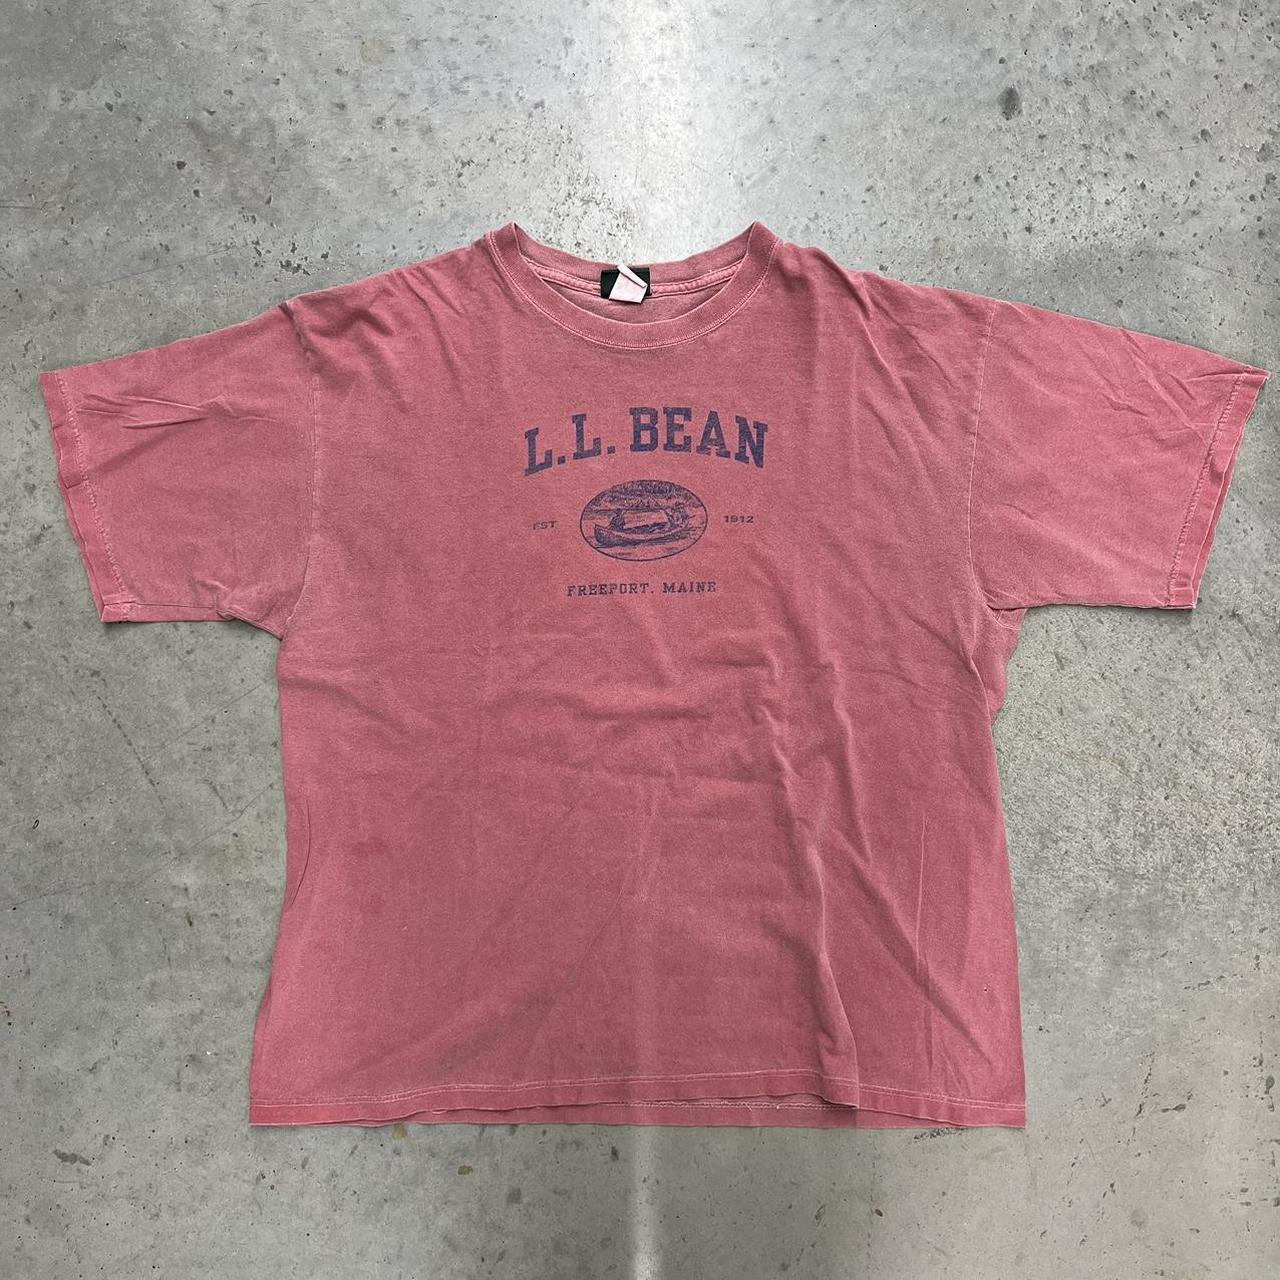 L.L.Bean Men's Pink T-shirt | Depop